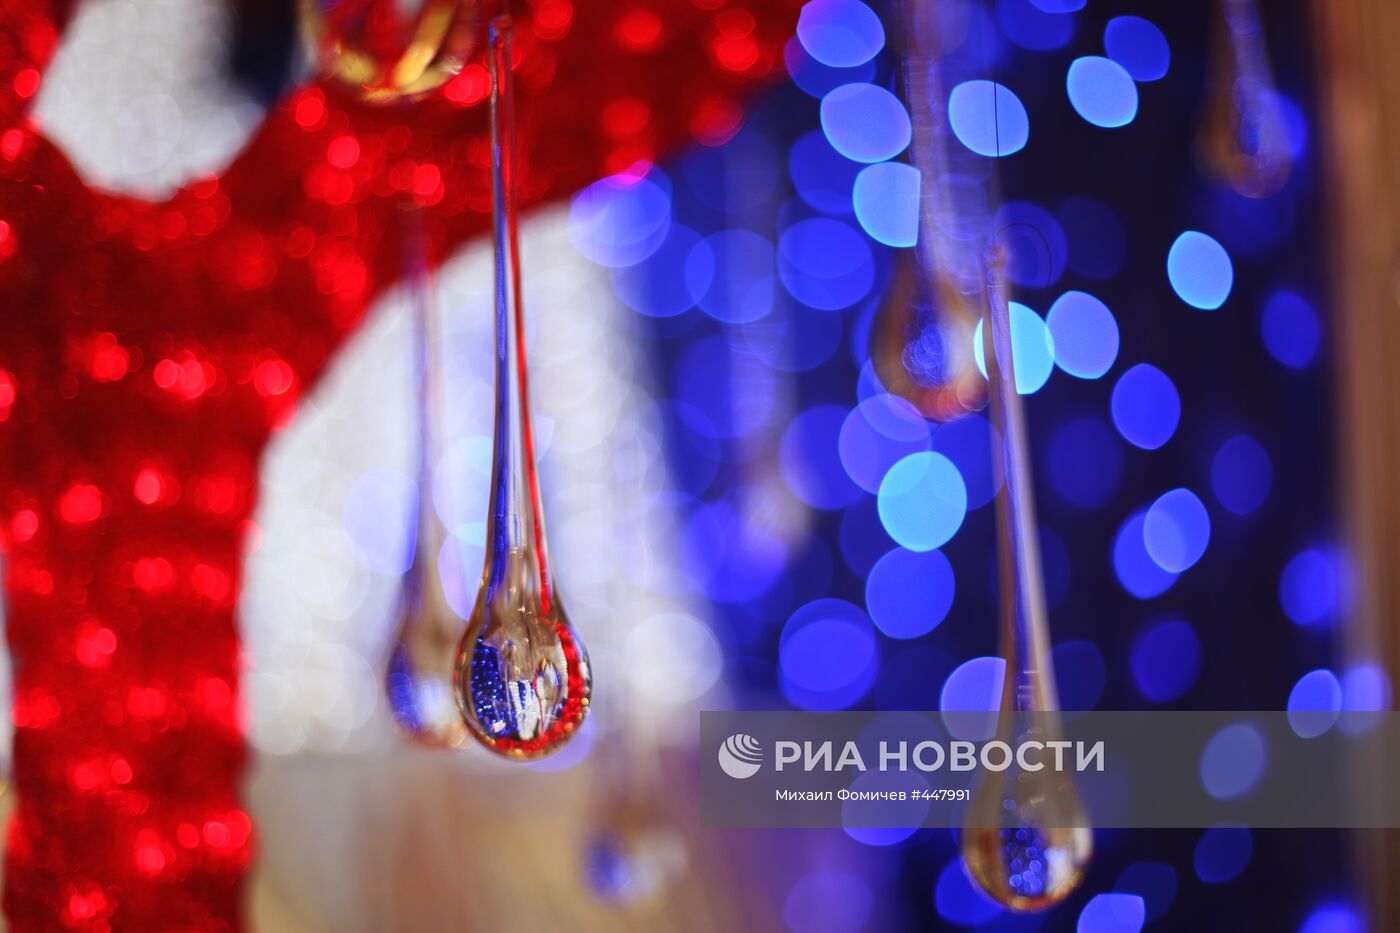 Торговая ярмарка "Christmas time/100 дней до Нового года" в ЦДХ